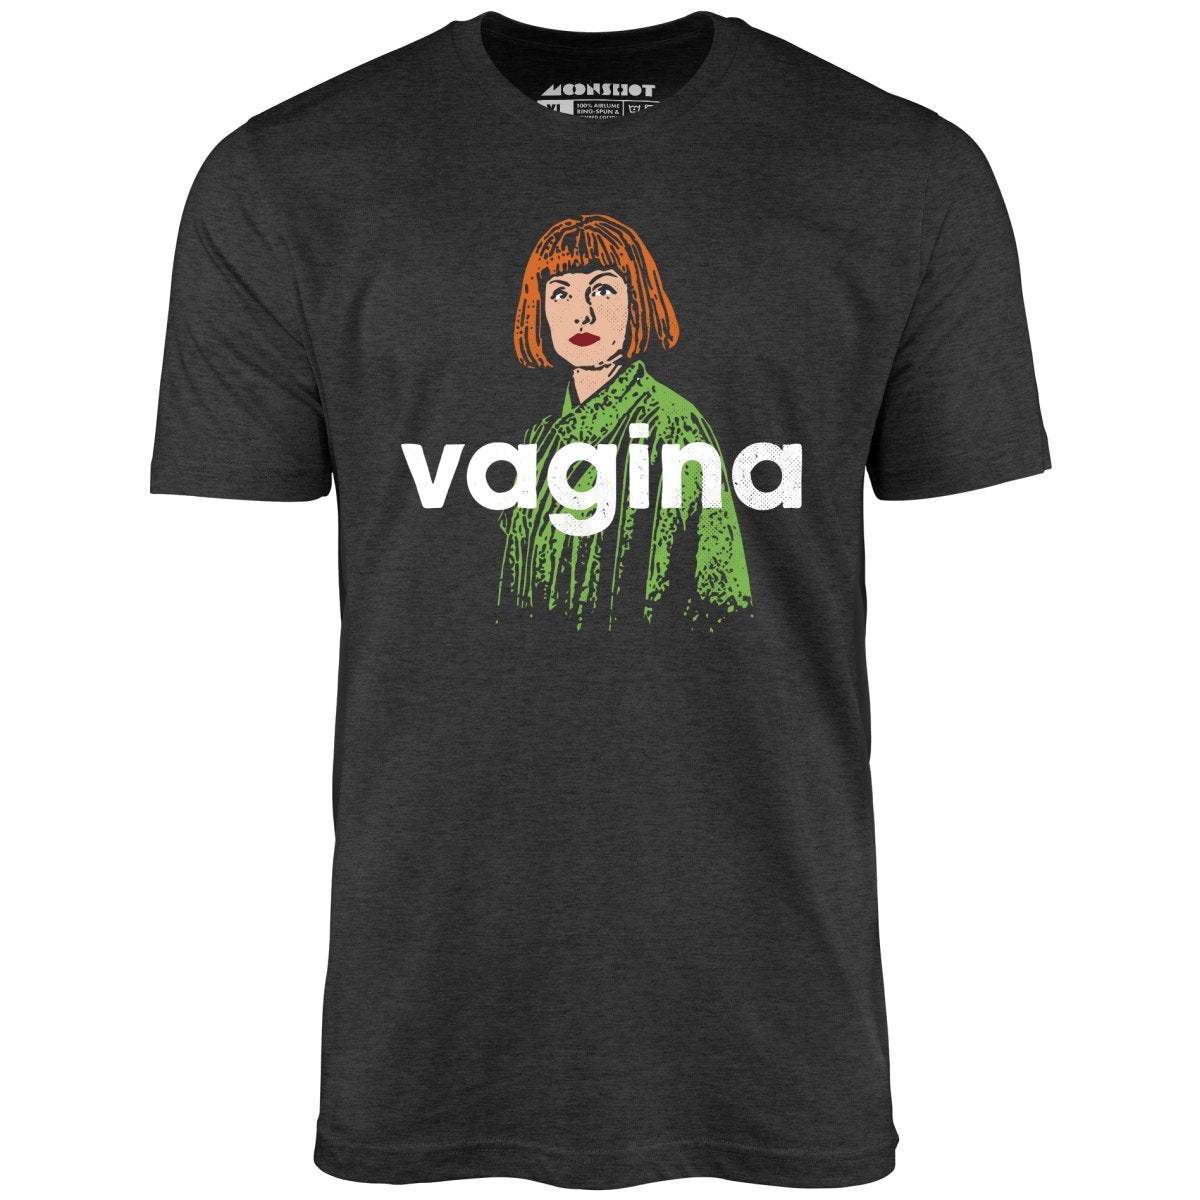 Maude Lebowski - Vagina - Unisex T-Shirt